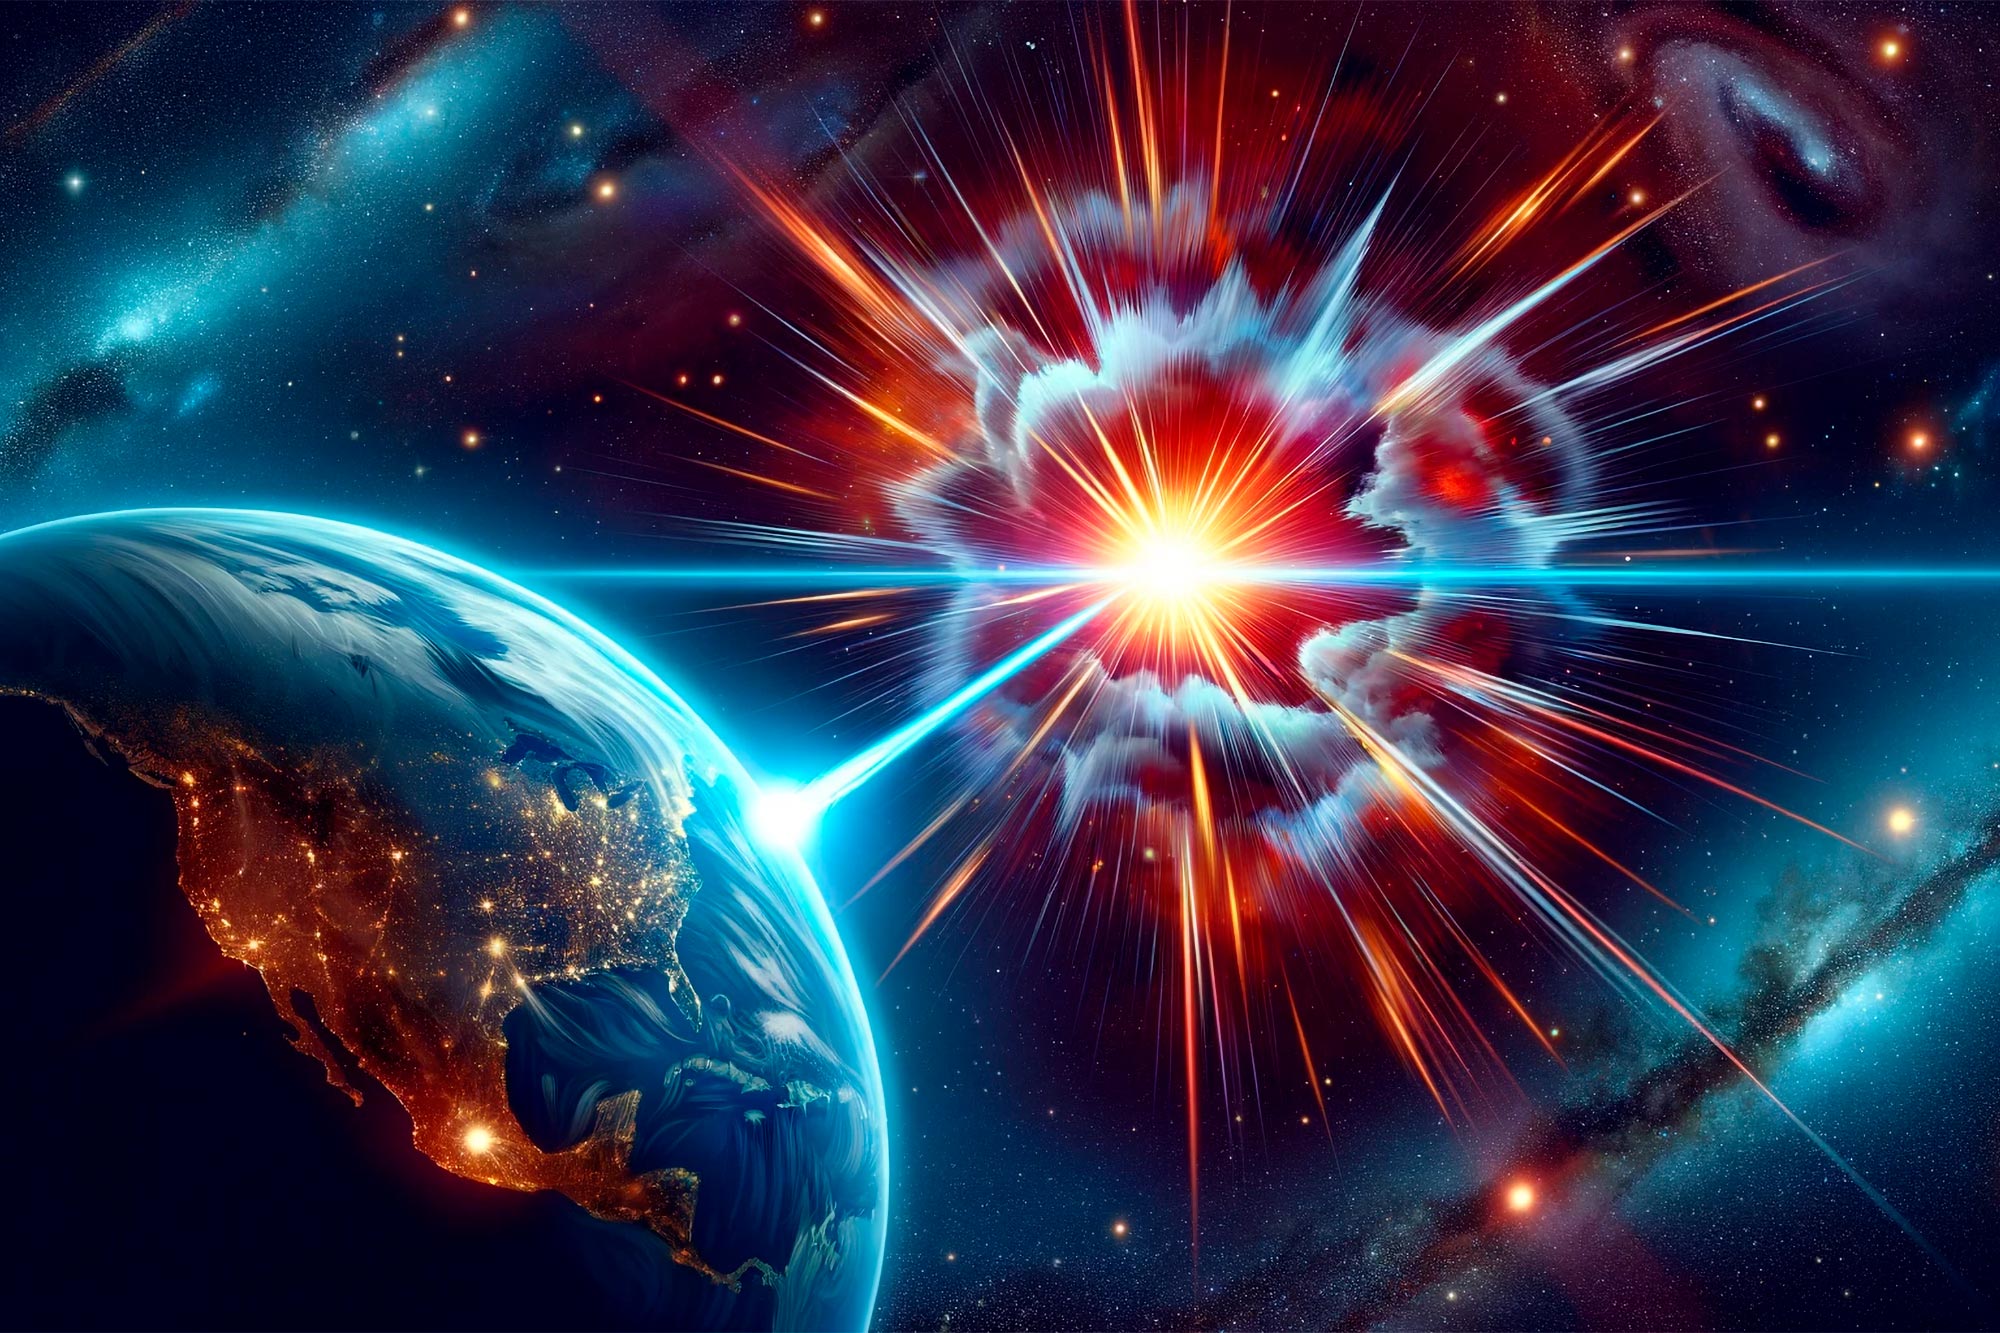 W Ziemię uderzył historyczny rozbłysk gamma powstały w wyniku eksplozji gwiazdy